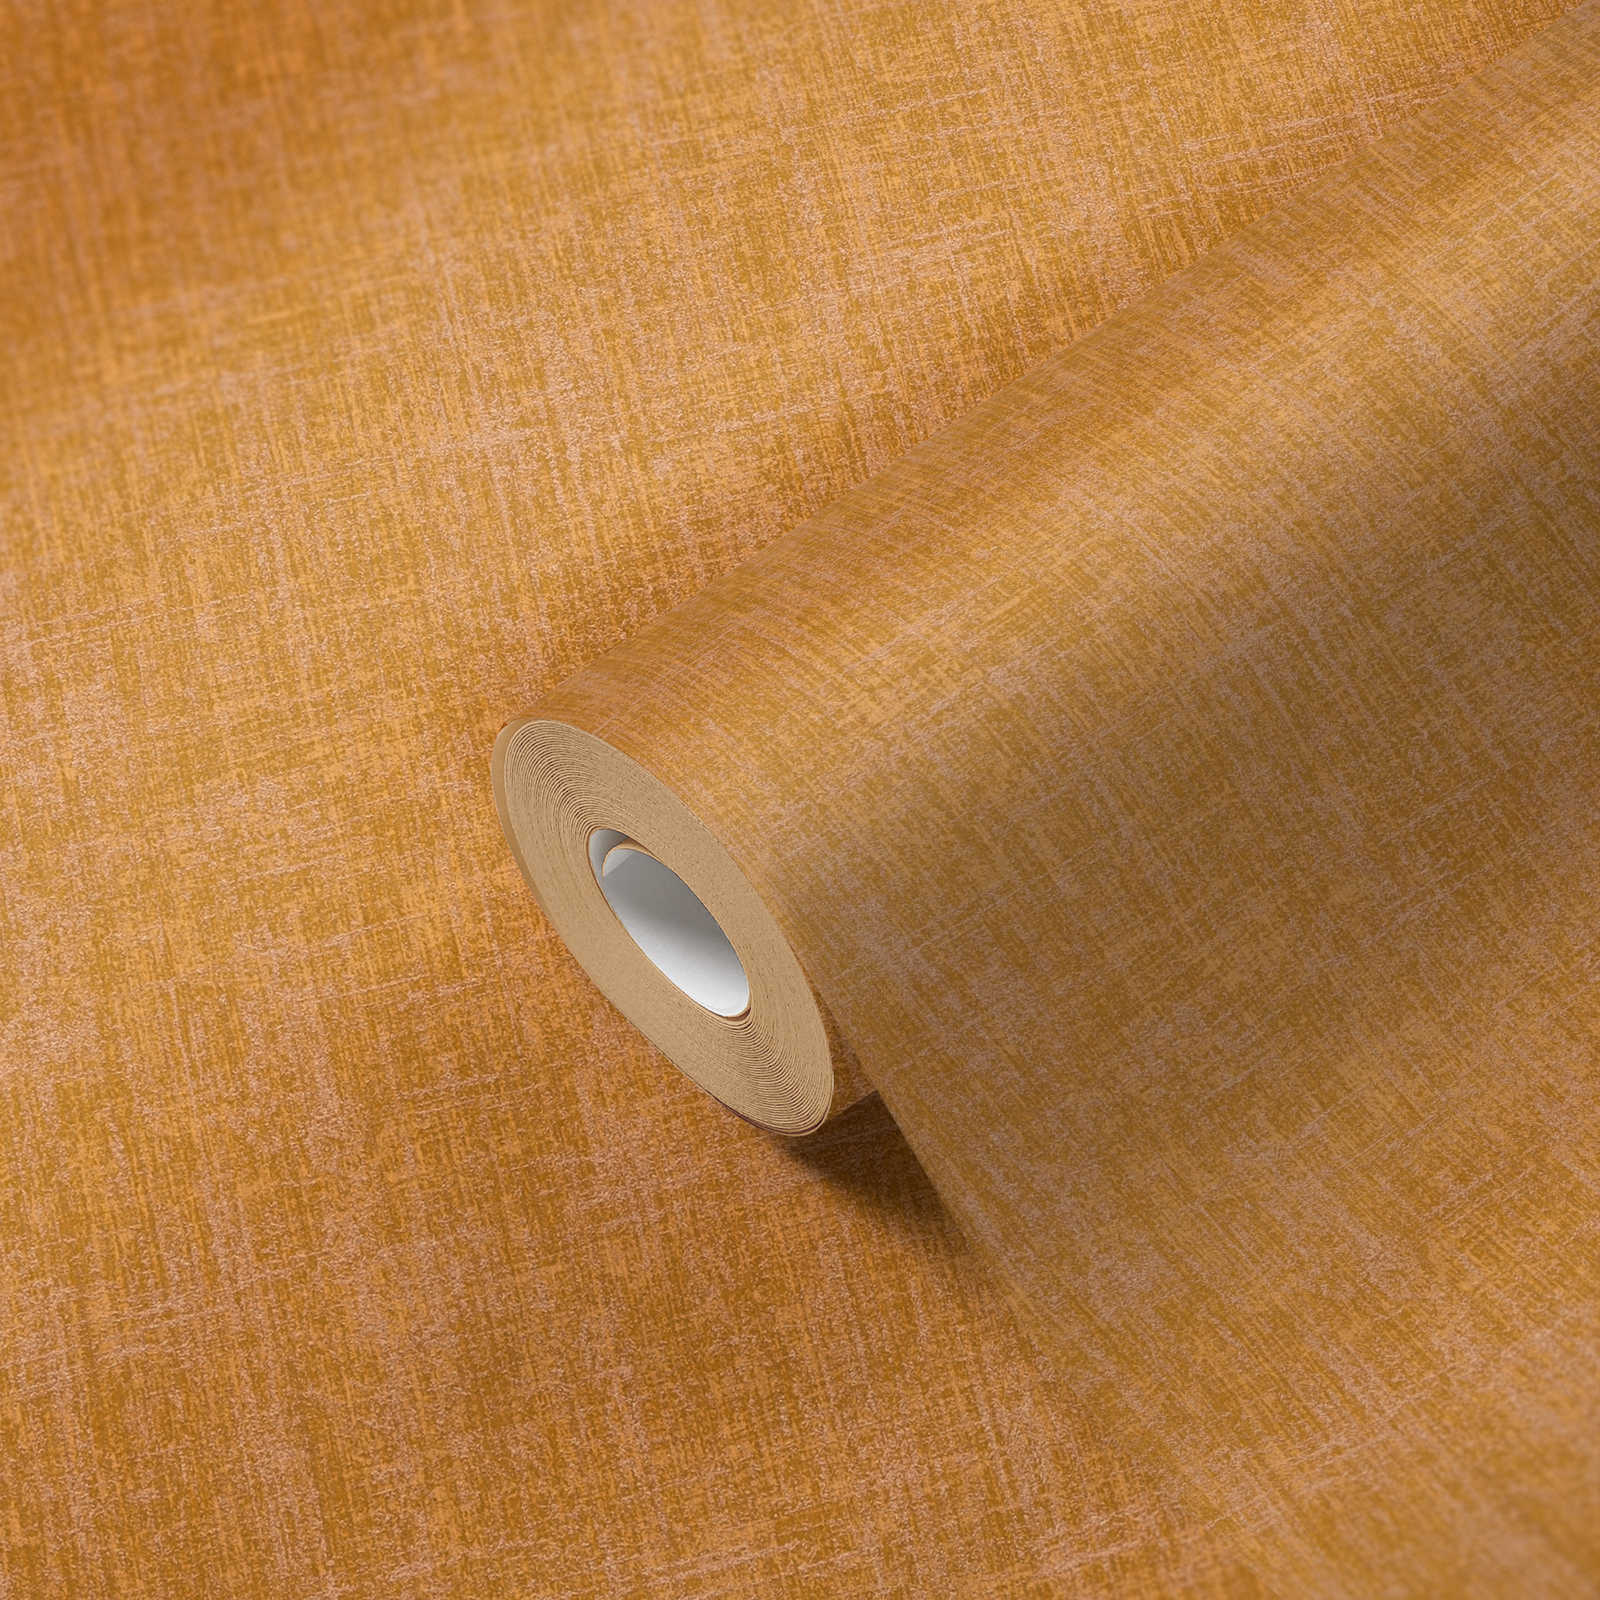             Papel pintado amarillo mostaza no tejido con estructura de lino grueso - amarillo
        